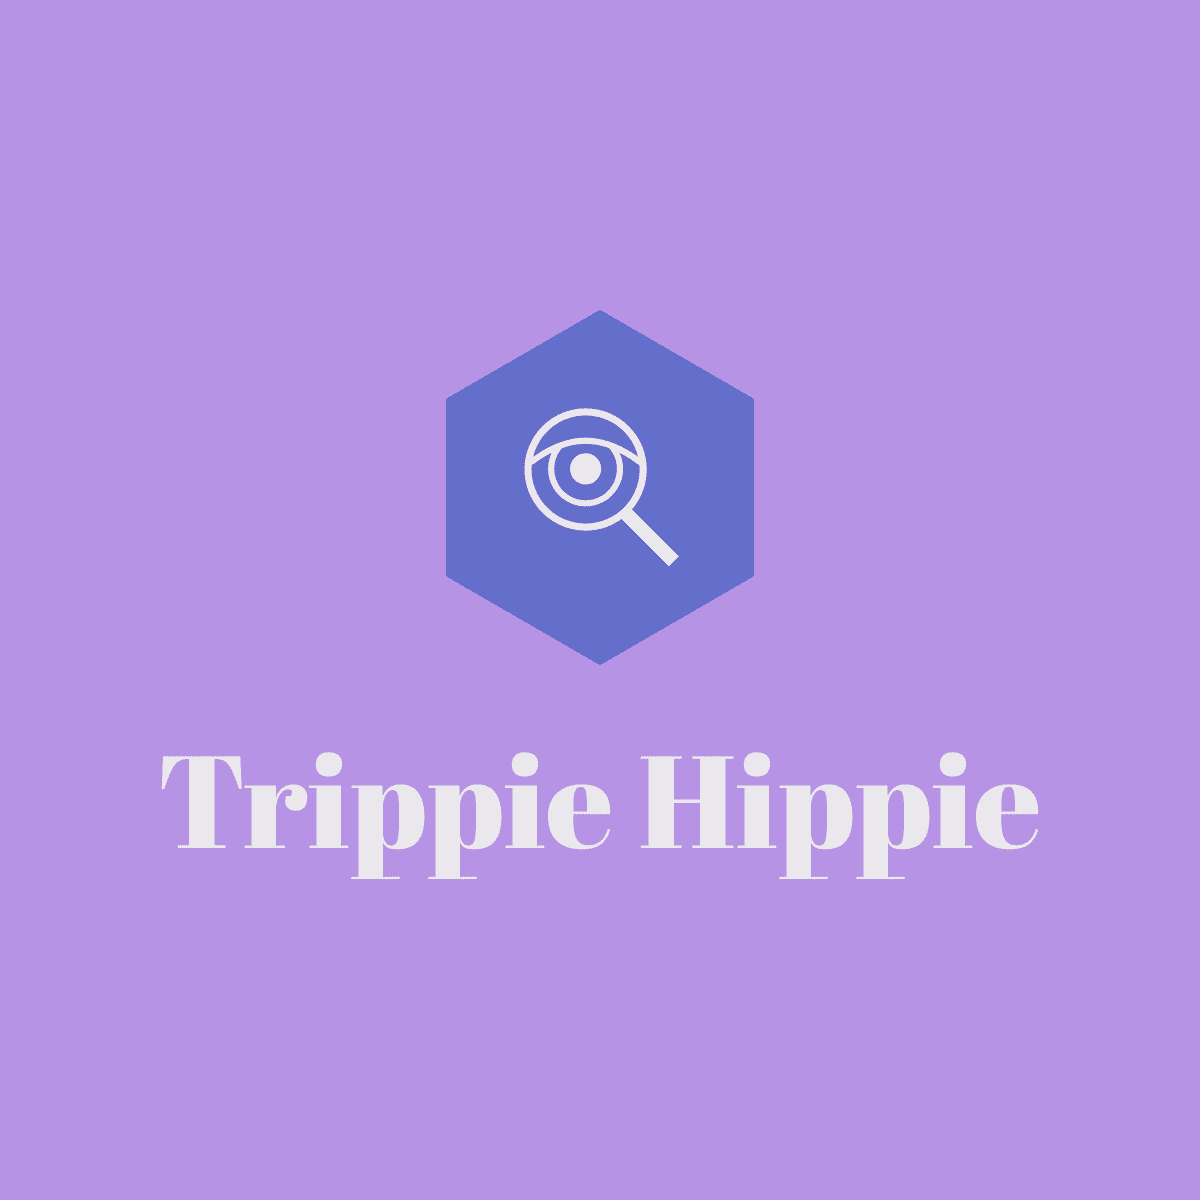 Trippie Hippie